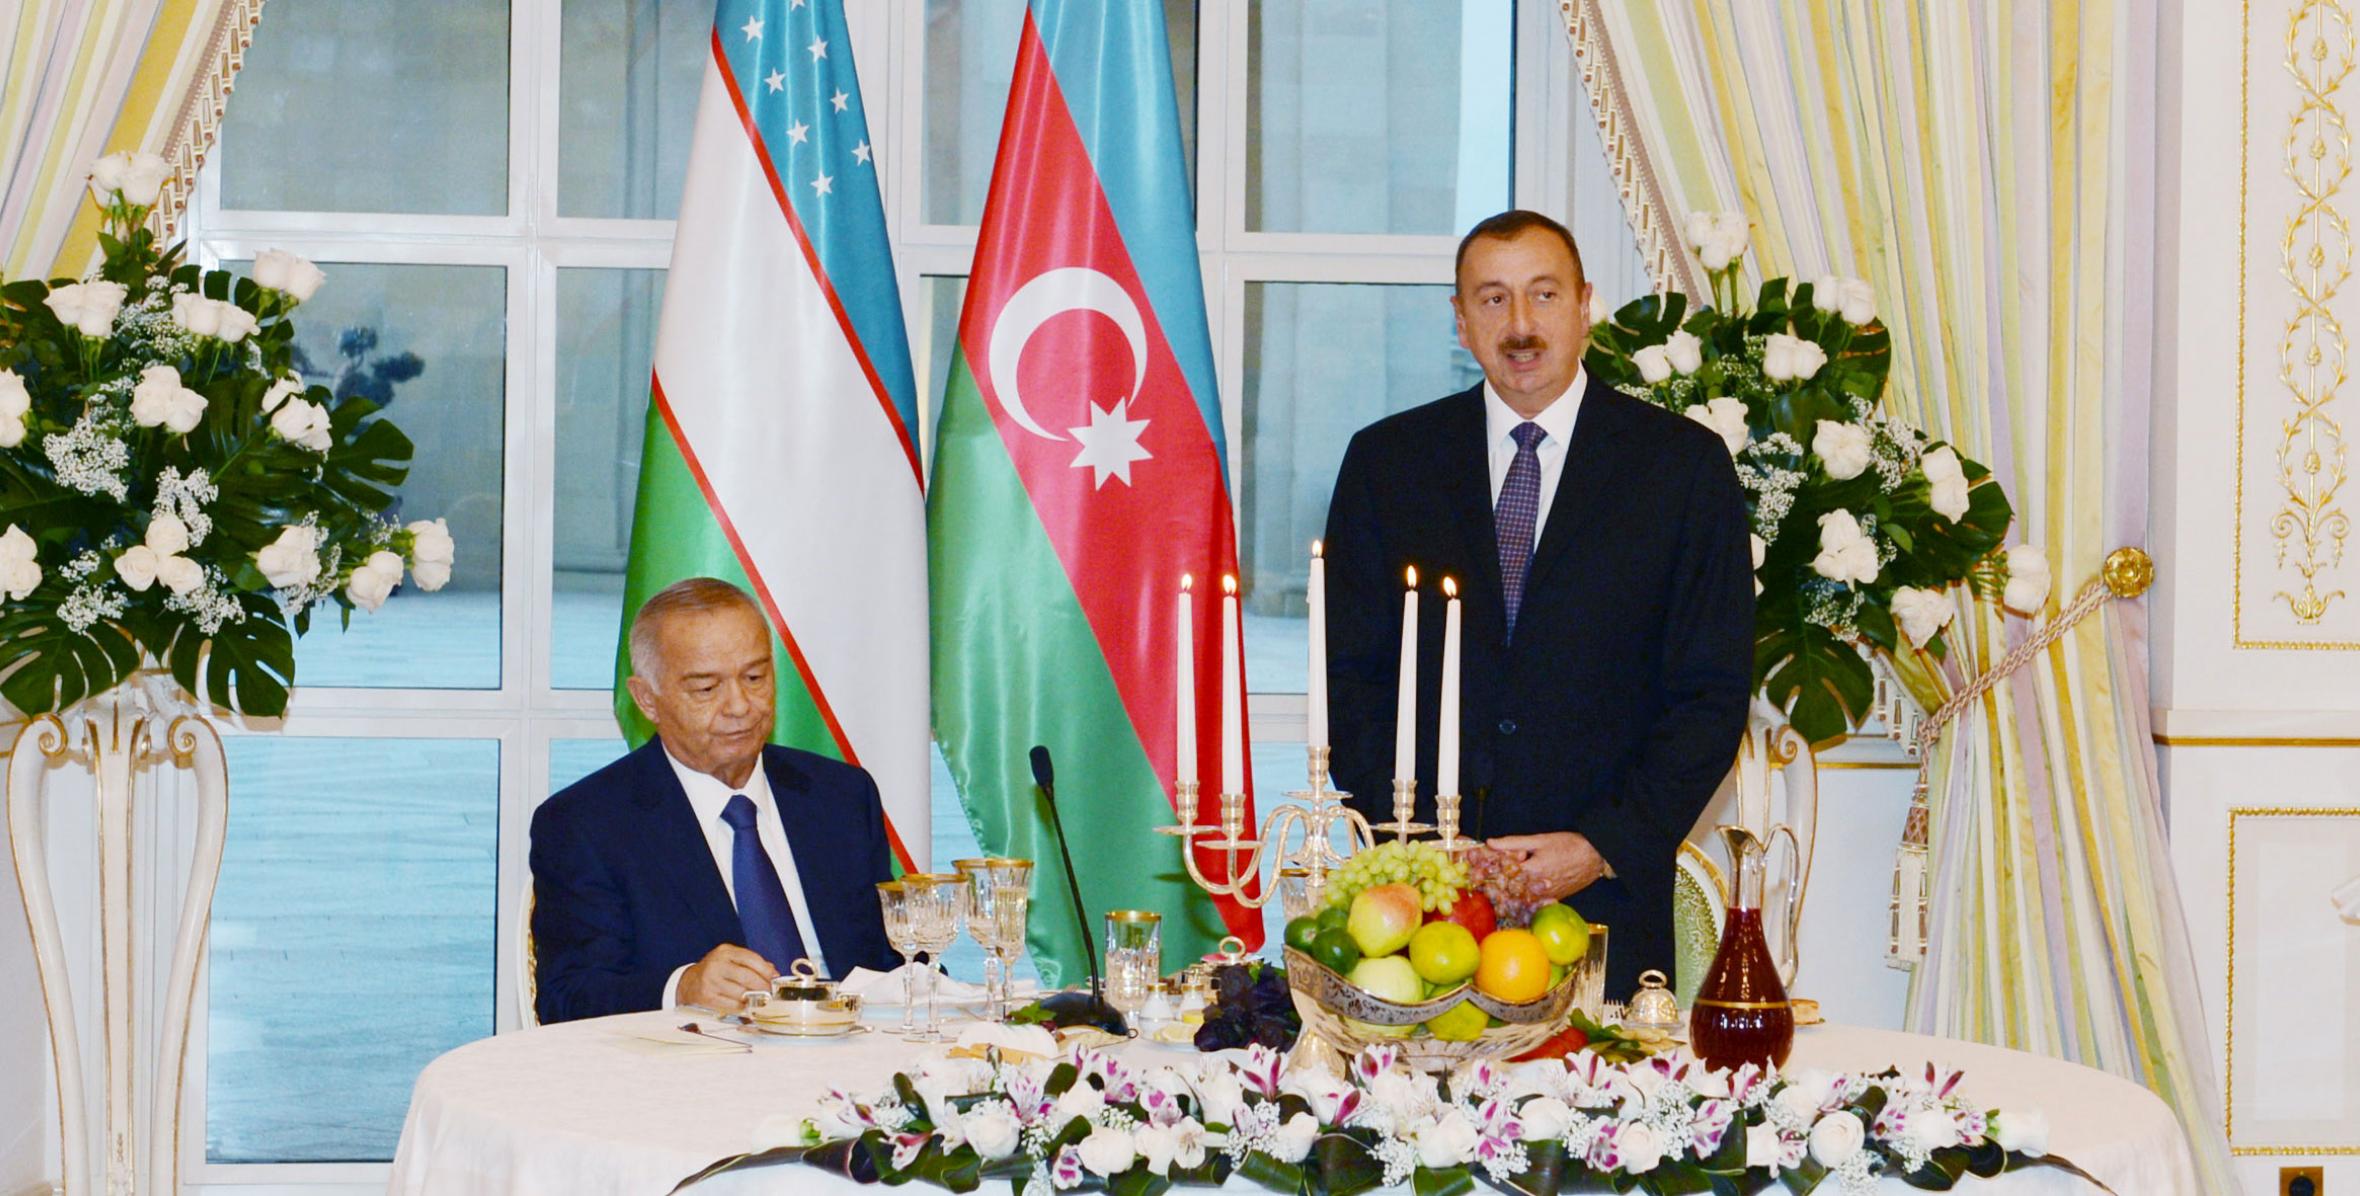 Был дан официальный обед в честь Президента Республики Узбекистан Ислама Каримова